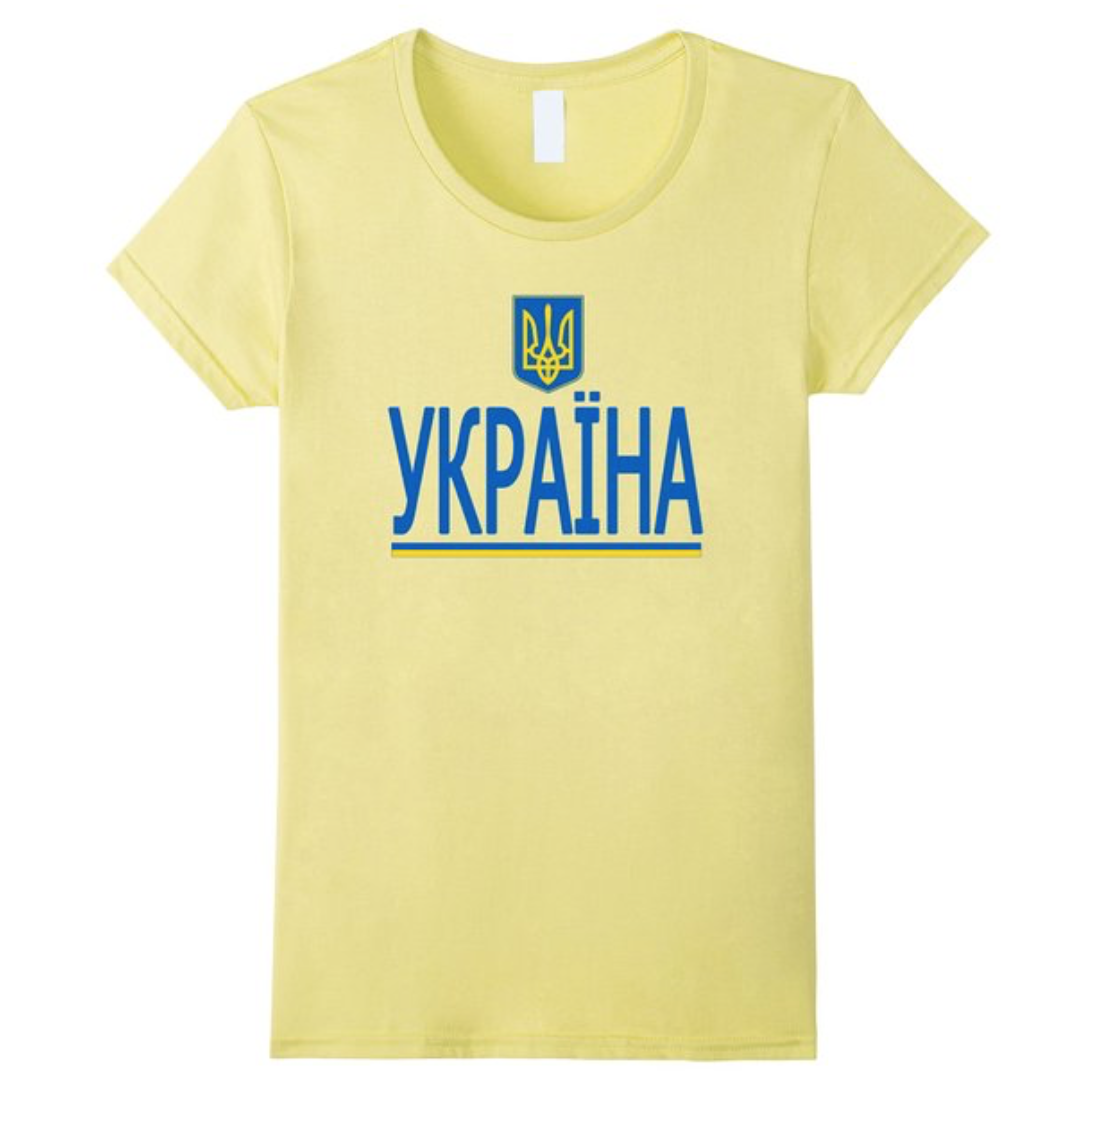 Україна National Team Tee Shirt